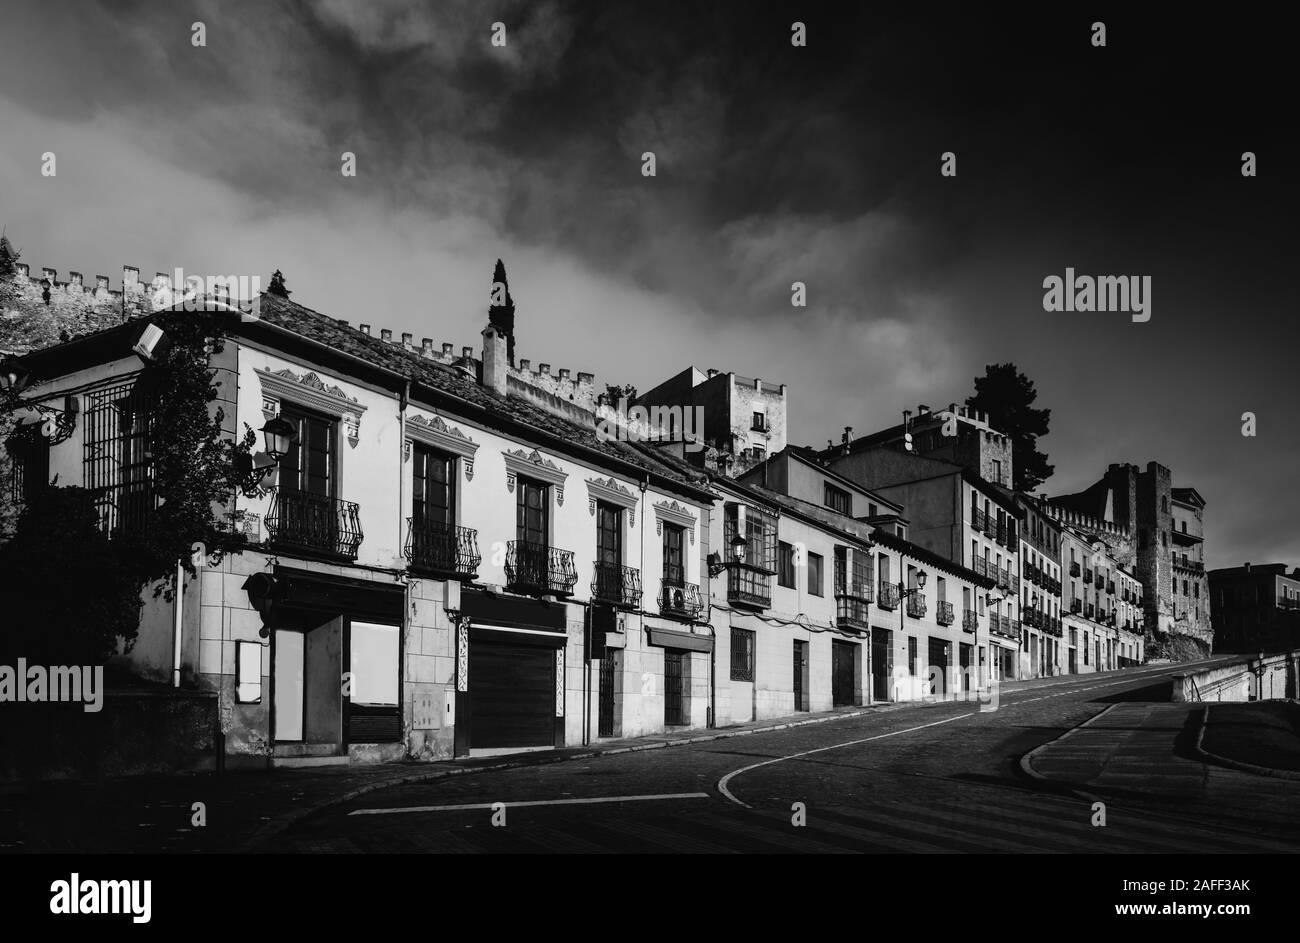 Monochrome fine art Stil der alten Gebäude in Segovia, Spanien. Stockfoto